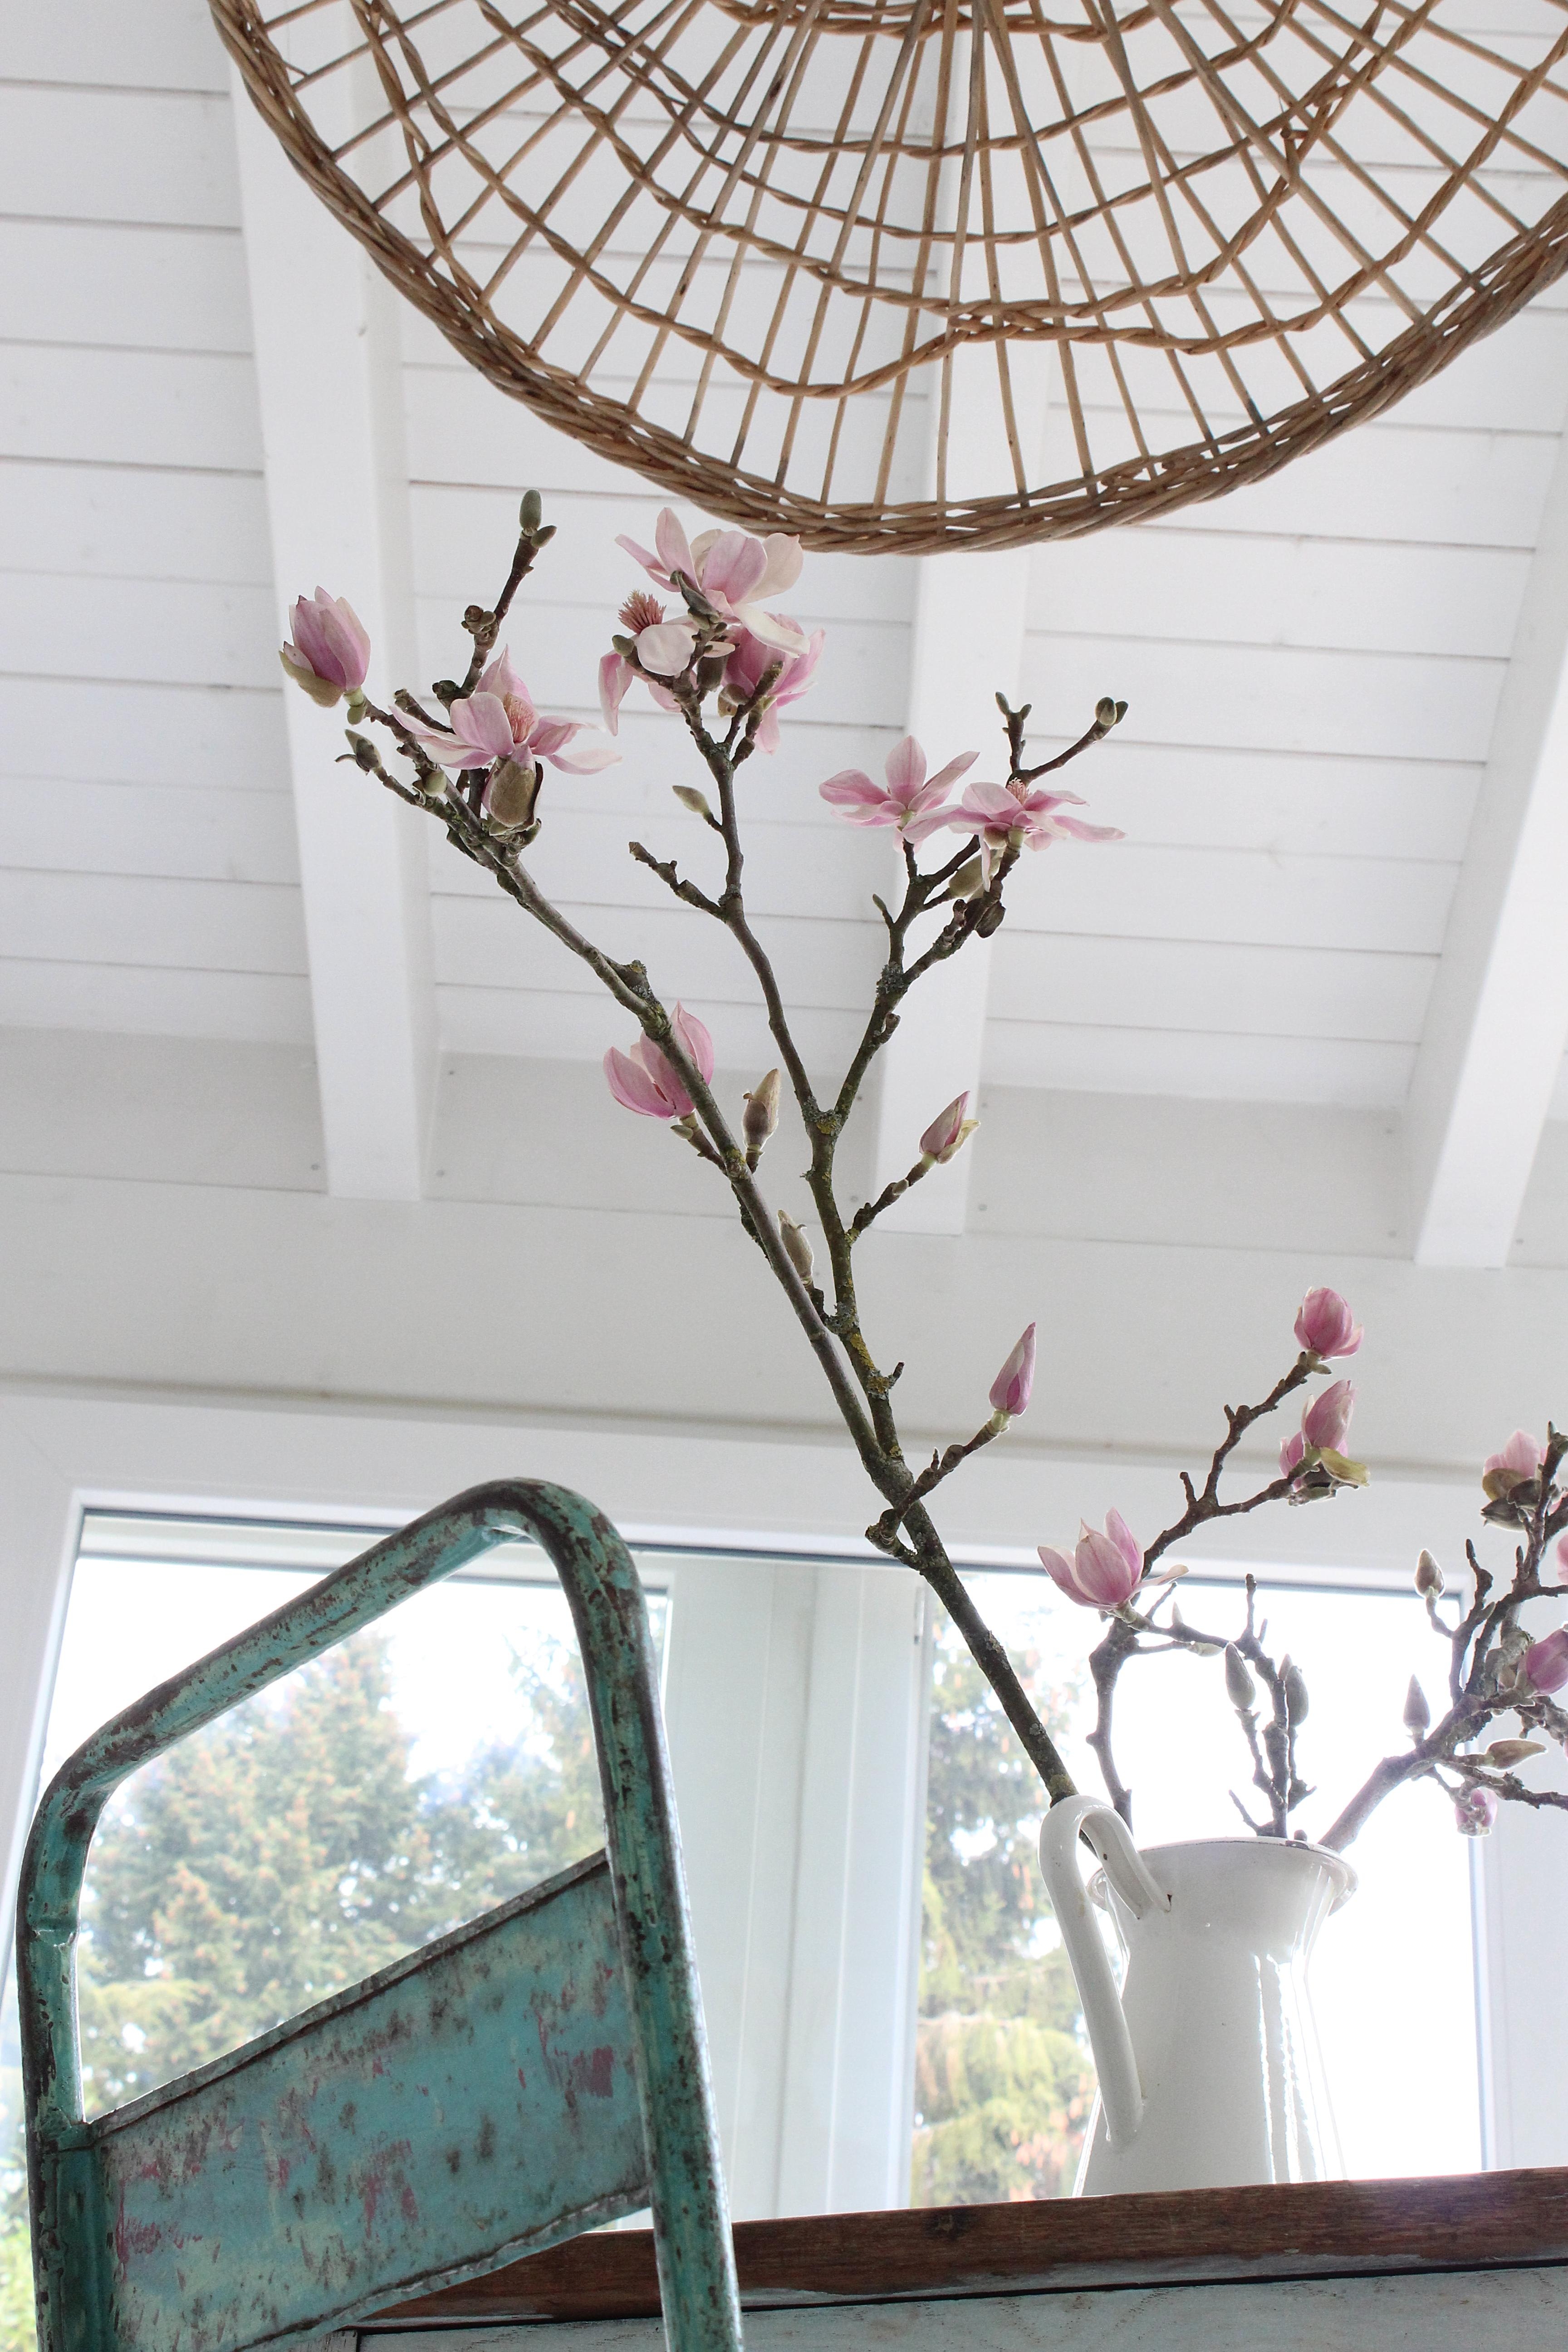 Sie ist tatsächlich aufgegangen, die schöne #magnolie...welch ein Augenschmaus...#blumen #wintergarten #blumendeko #mint